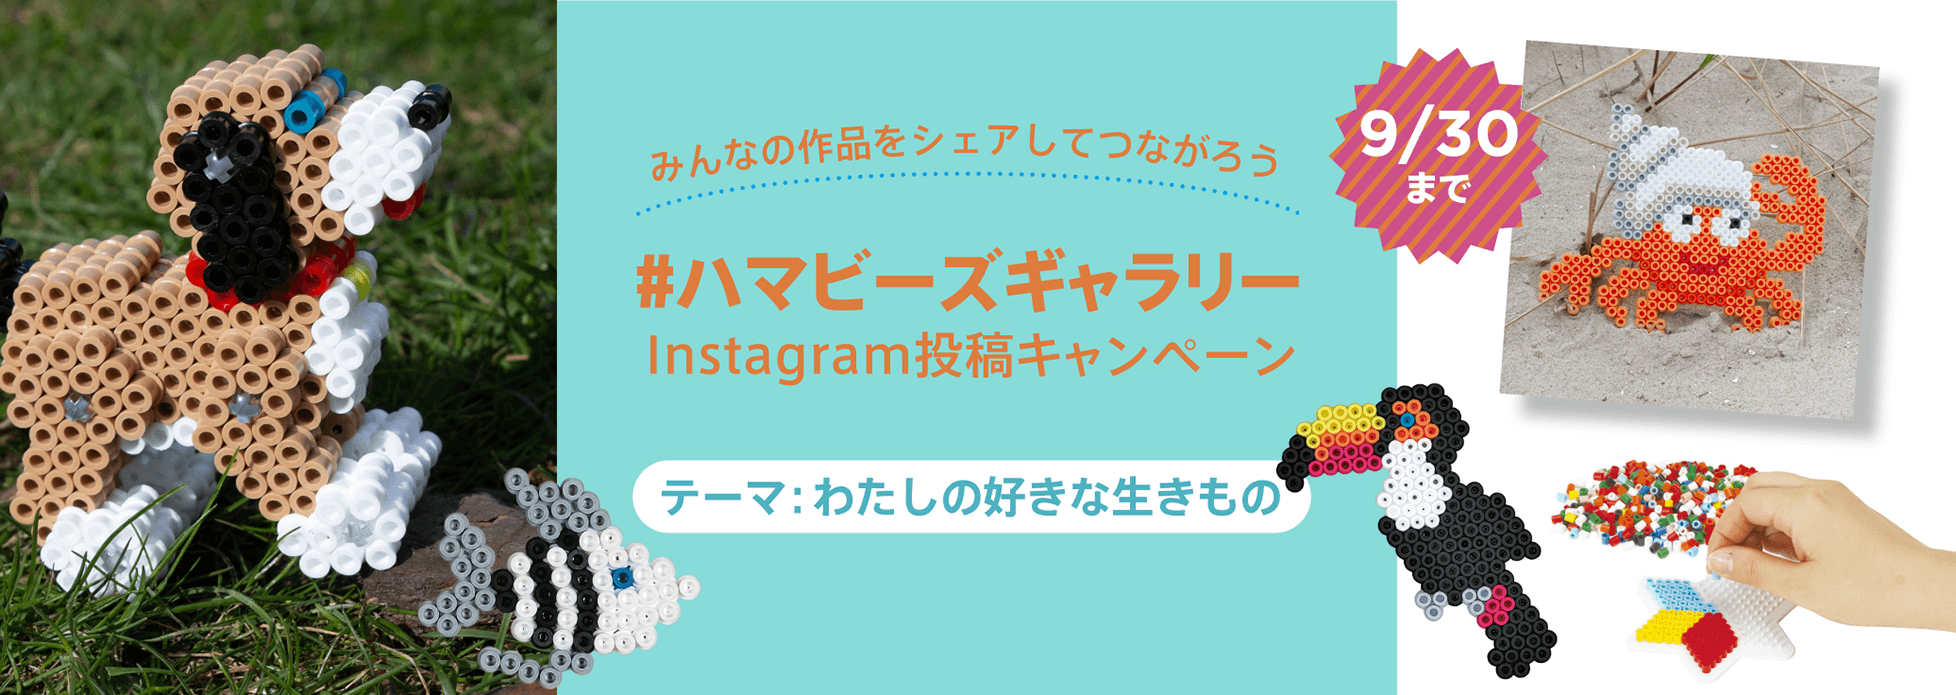 【ハマビーズ】Instagram投稿キャンペーン